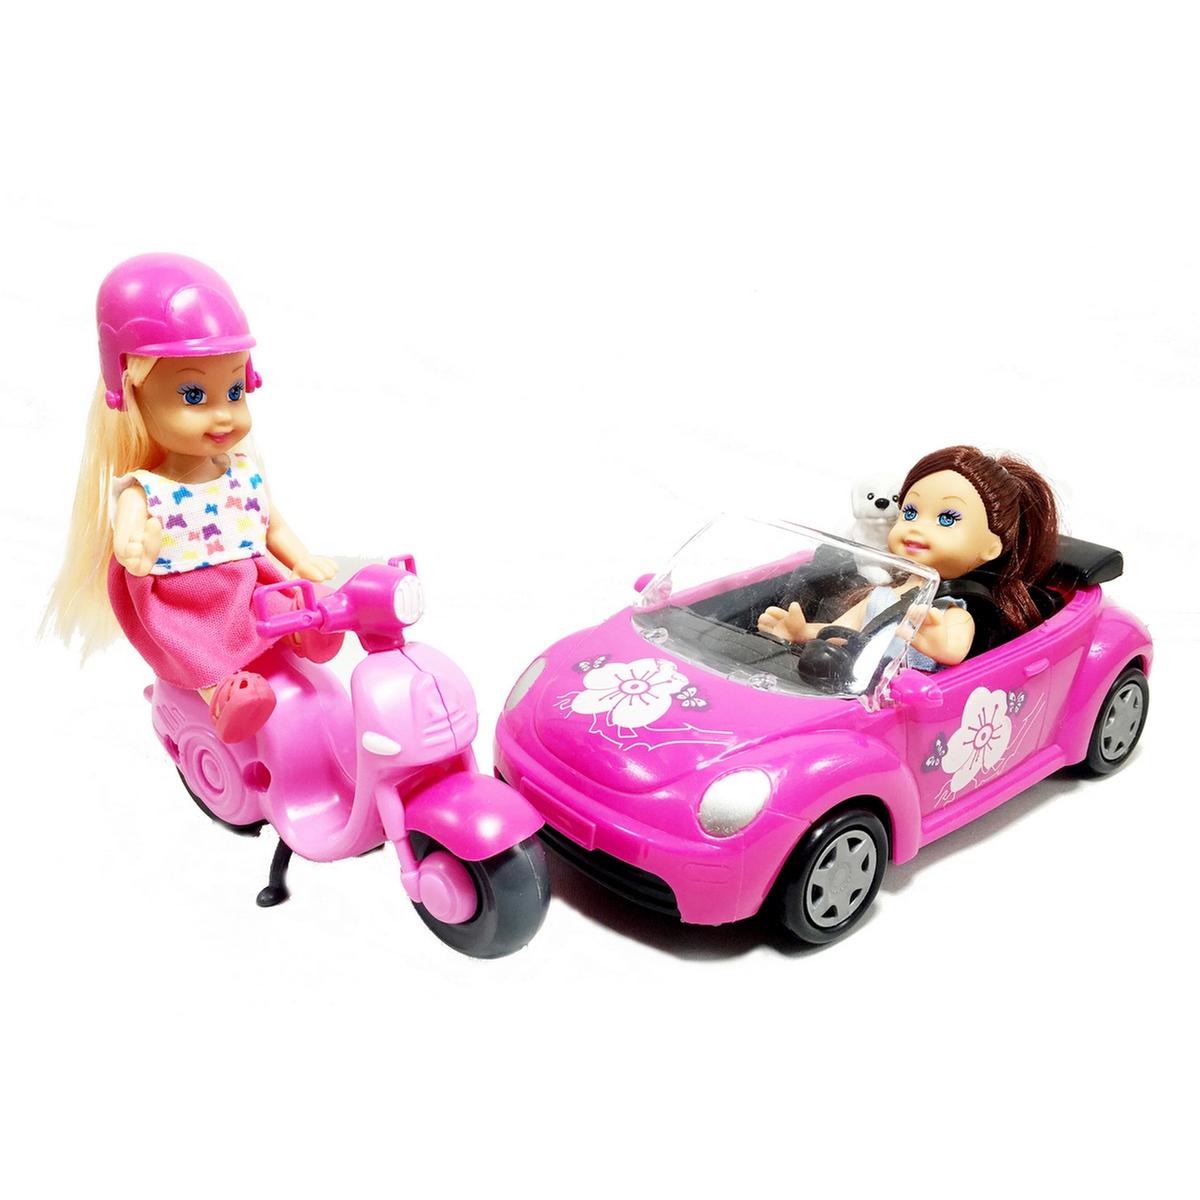 Brinquedos e Jogos: Veículos - Acessórios para Bonecas na